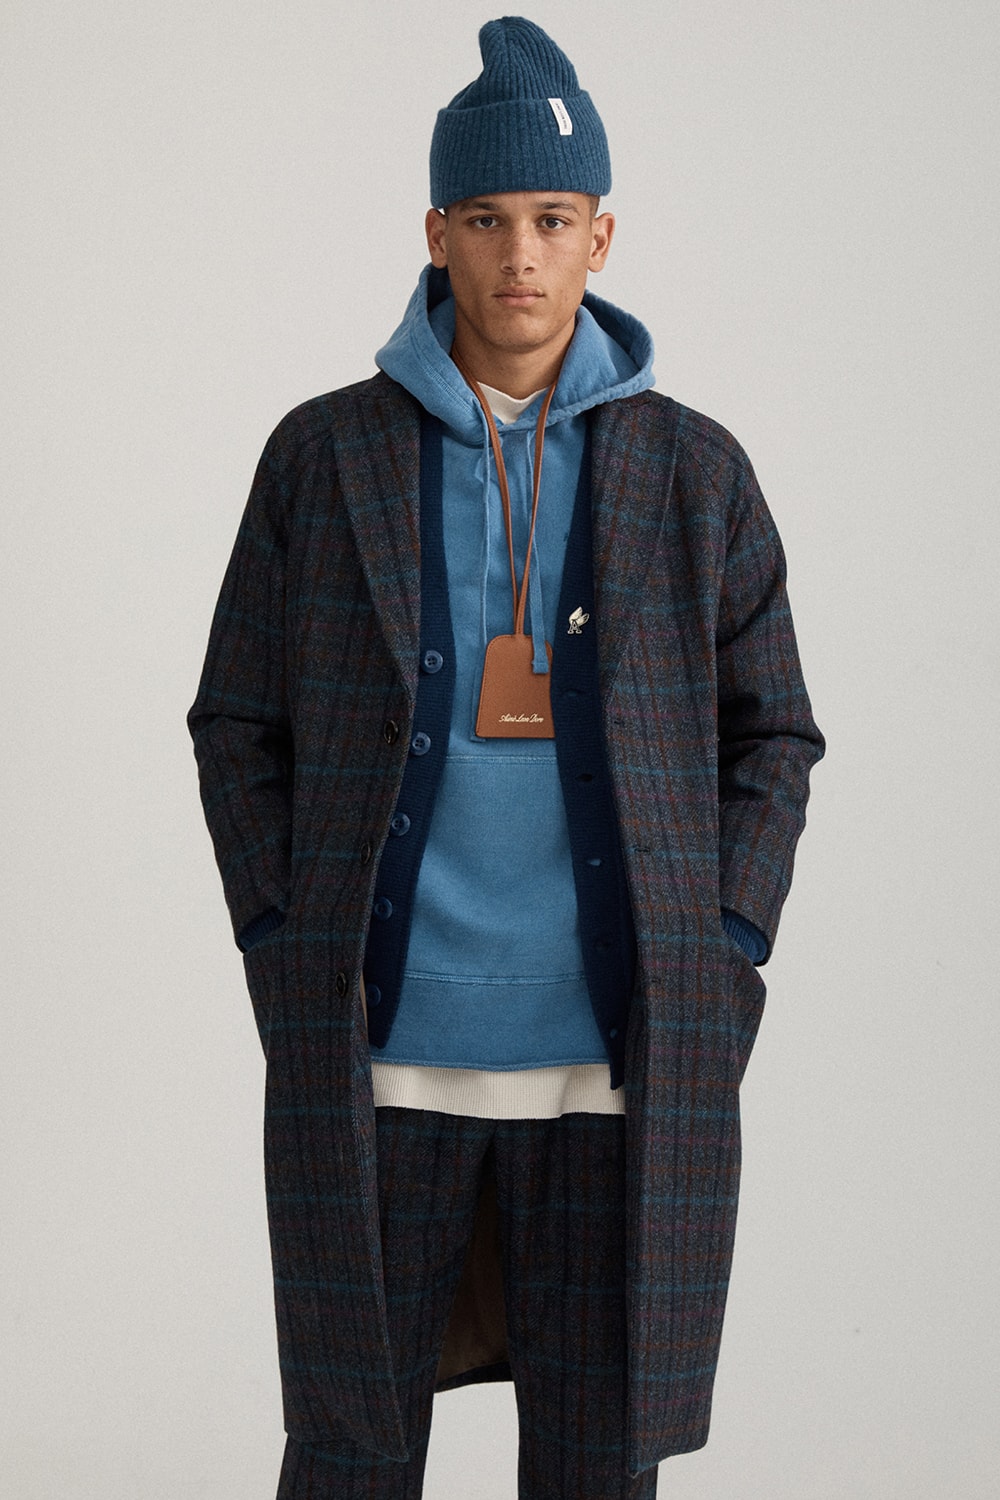 에임 레온 도르 2019 가을, 겨울 컬렉션 룩북 - 니트웨어, 플리스 재킷, 티셔츠 